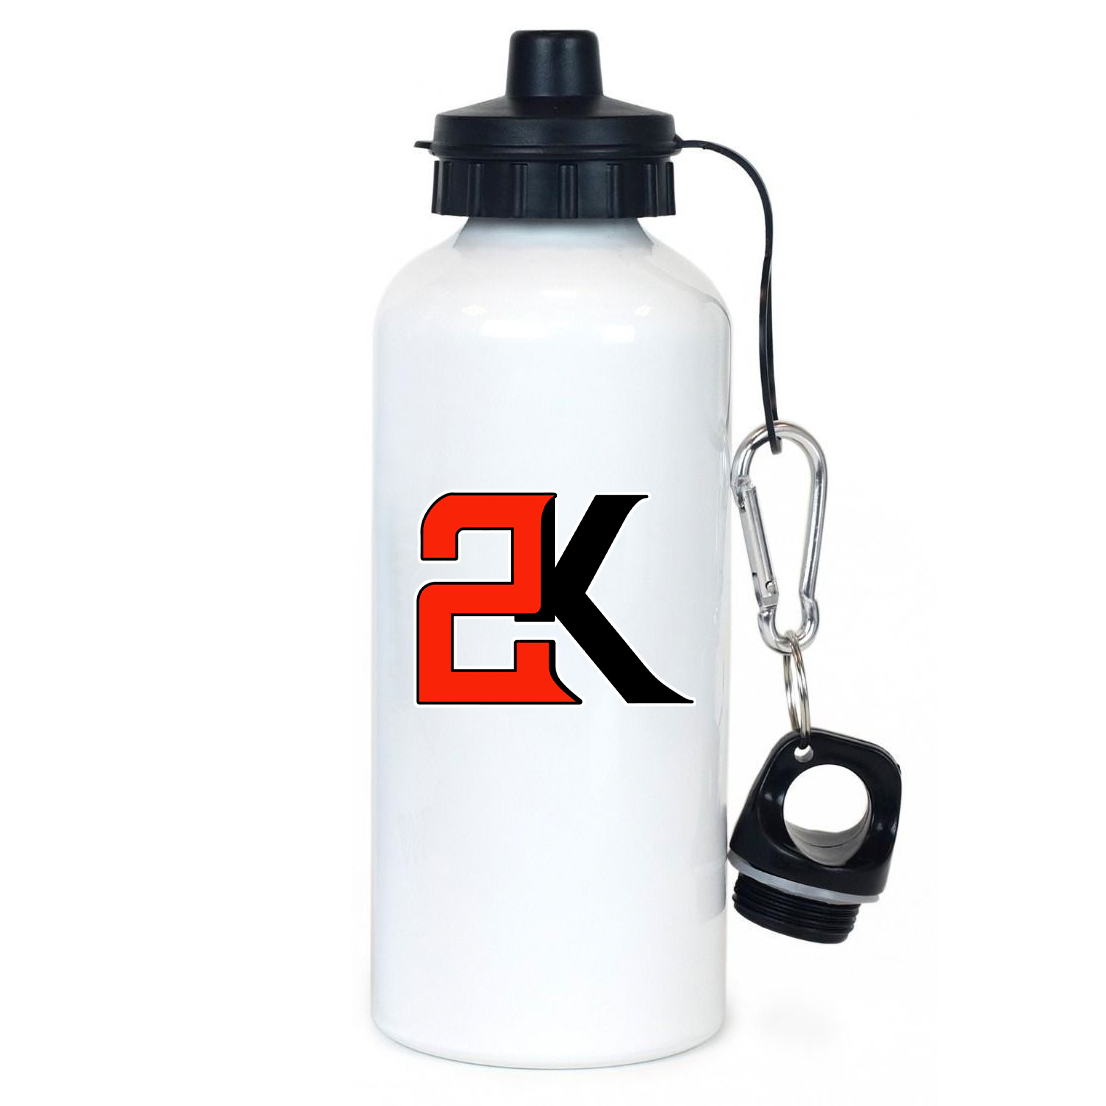 2K Softball Team Water Bottle